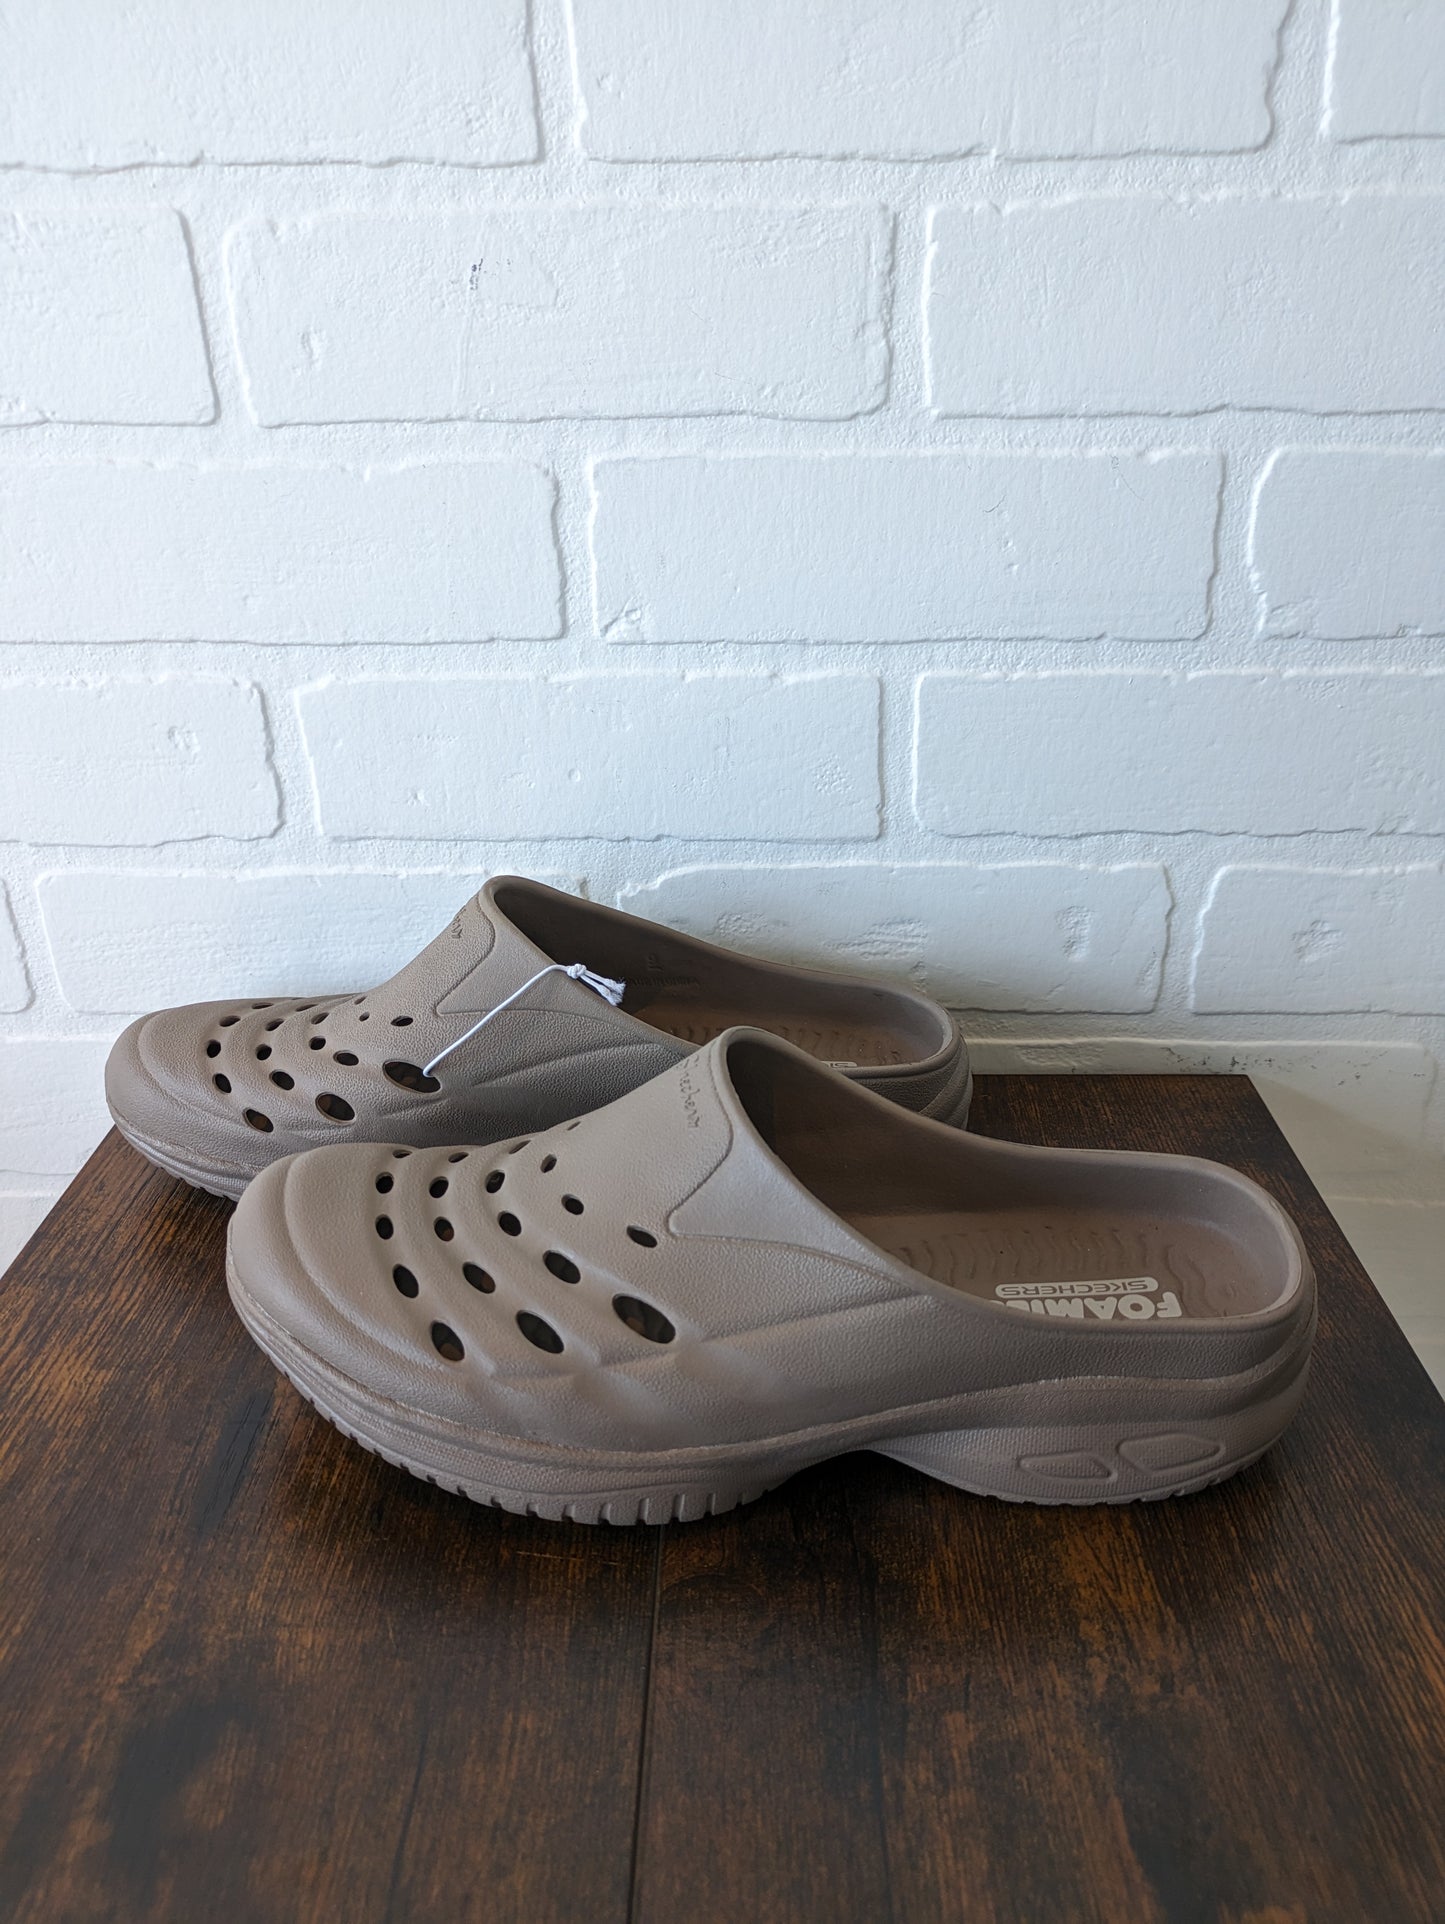 Shoes Flats Mule & Slide By Skechers  Size: 9